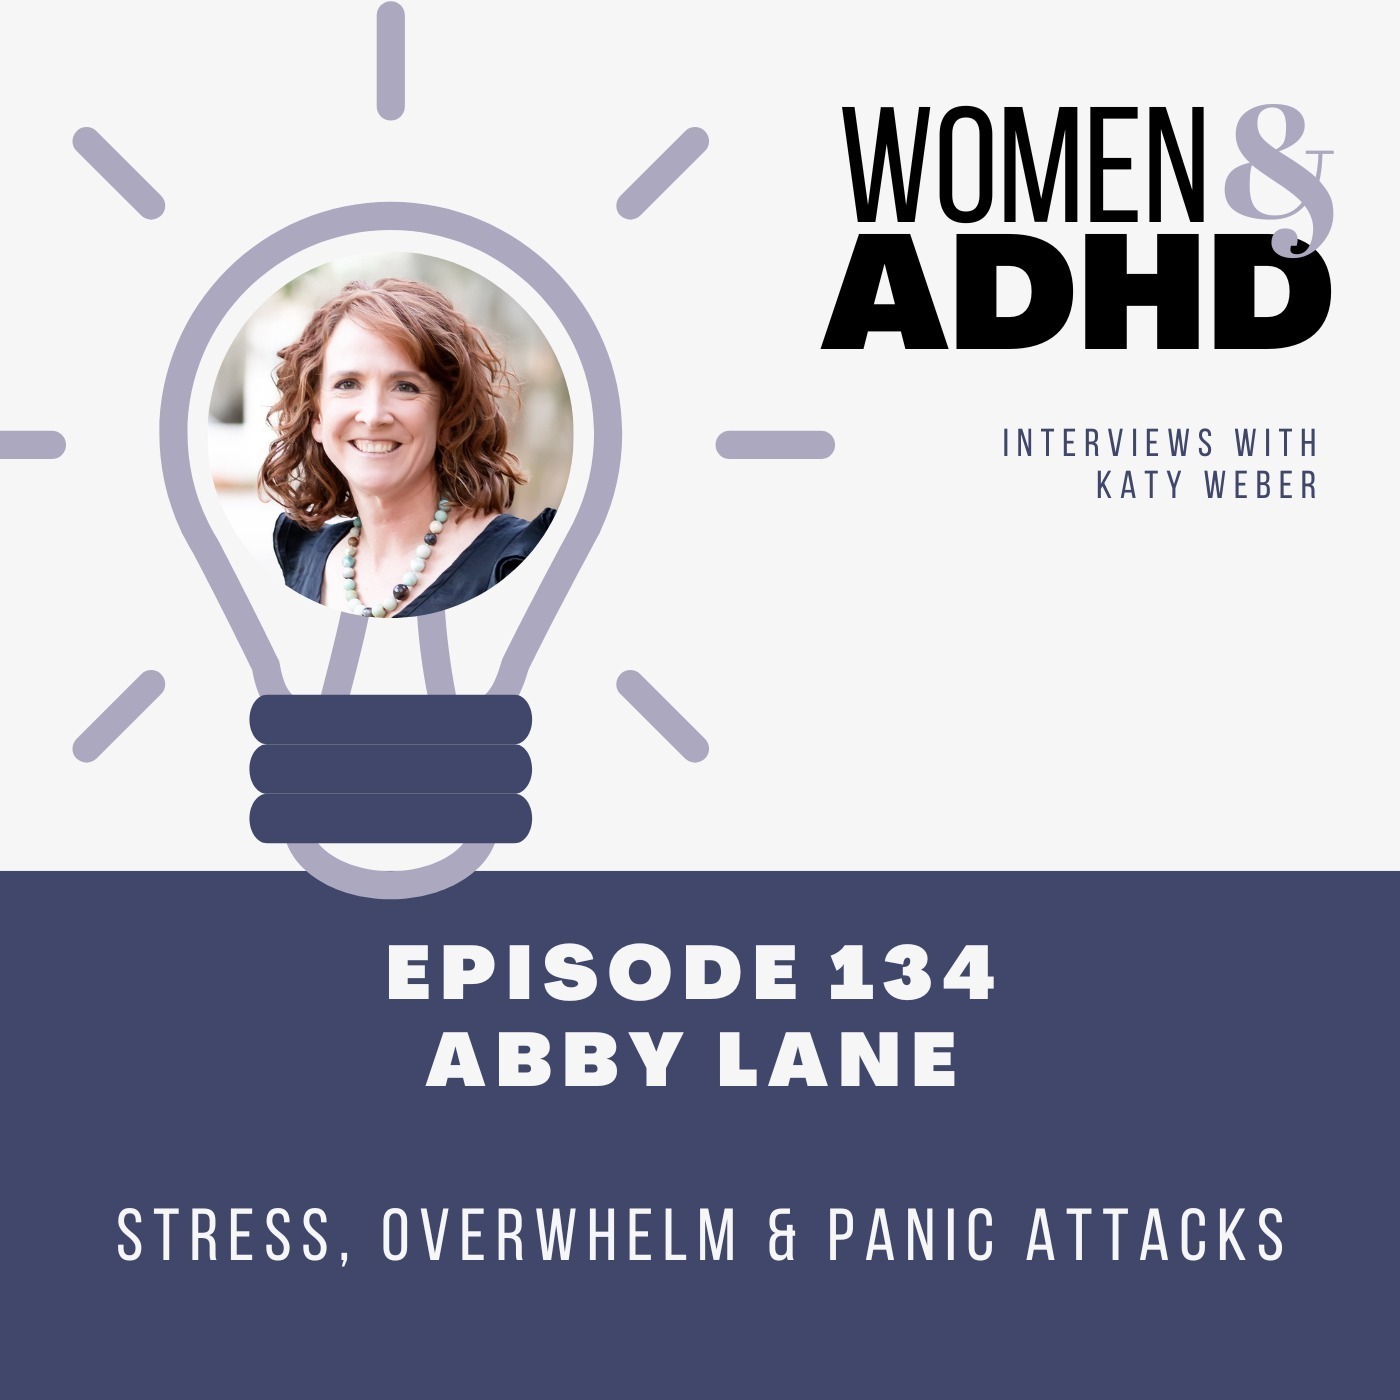 Abby Lane: Stress, overwhelm & panic attacks